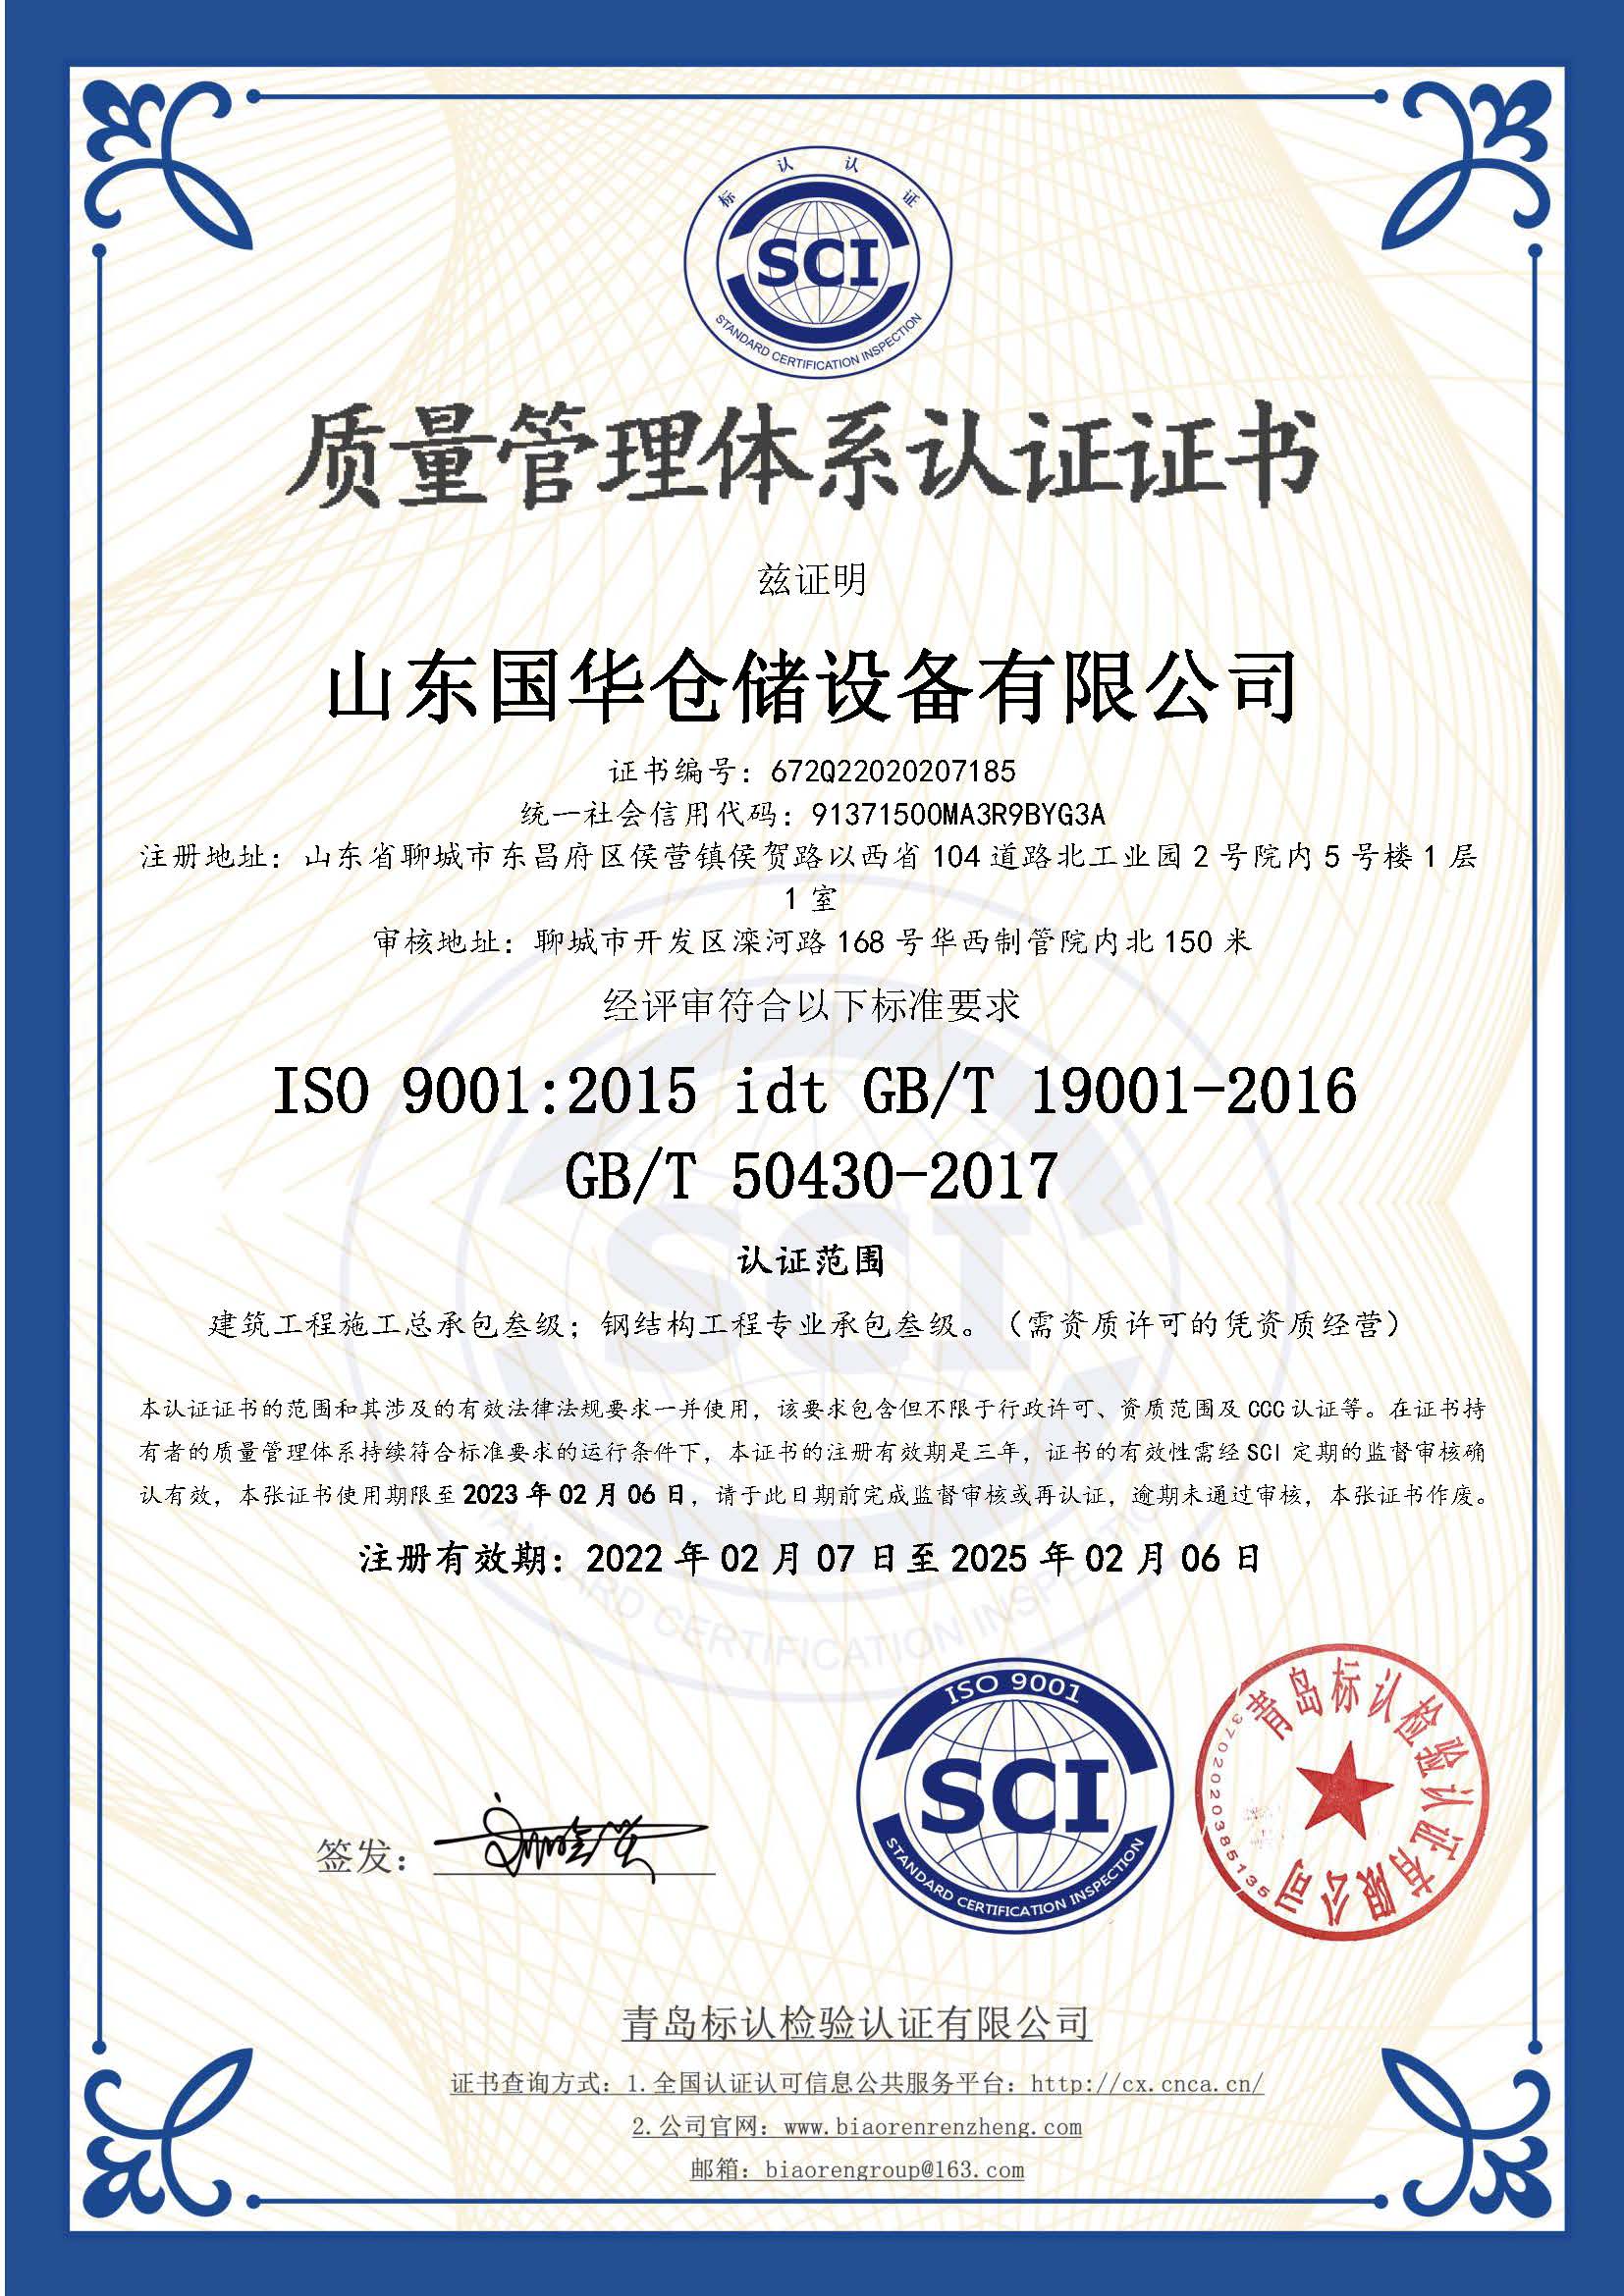 克孜勒苏柯尔克孜钢板仓ISO质量体系认证证书